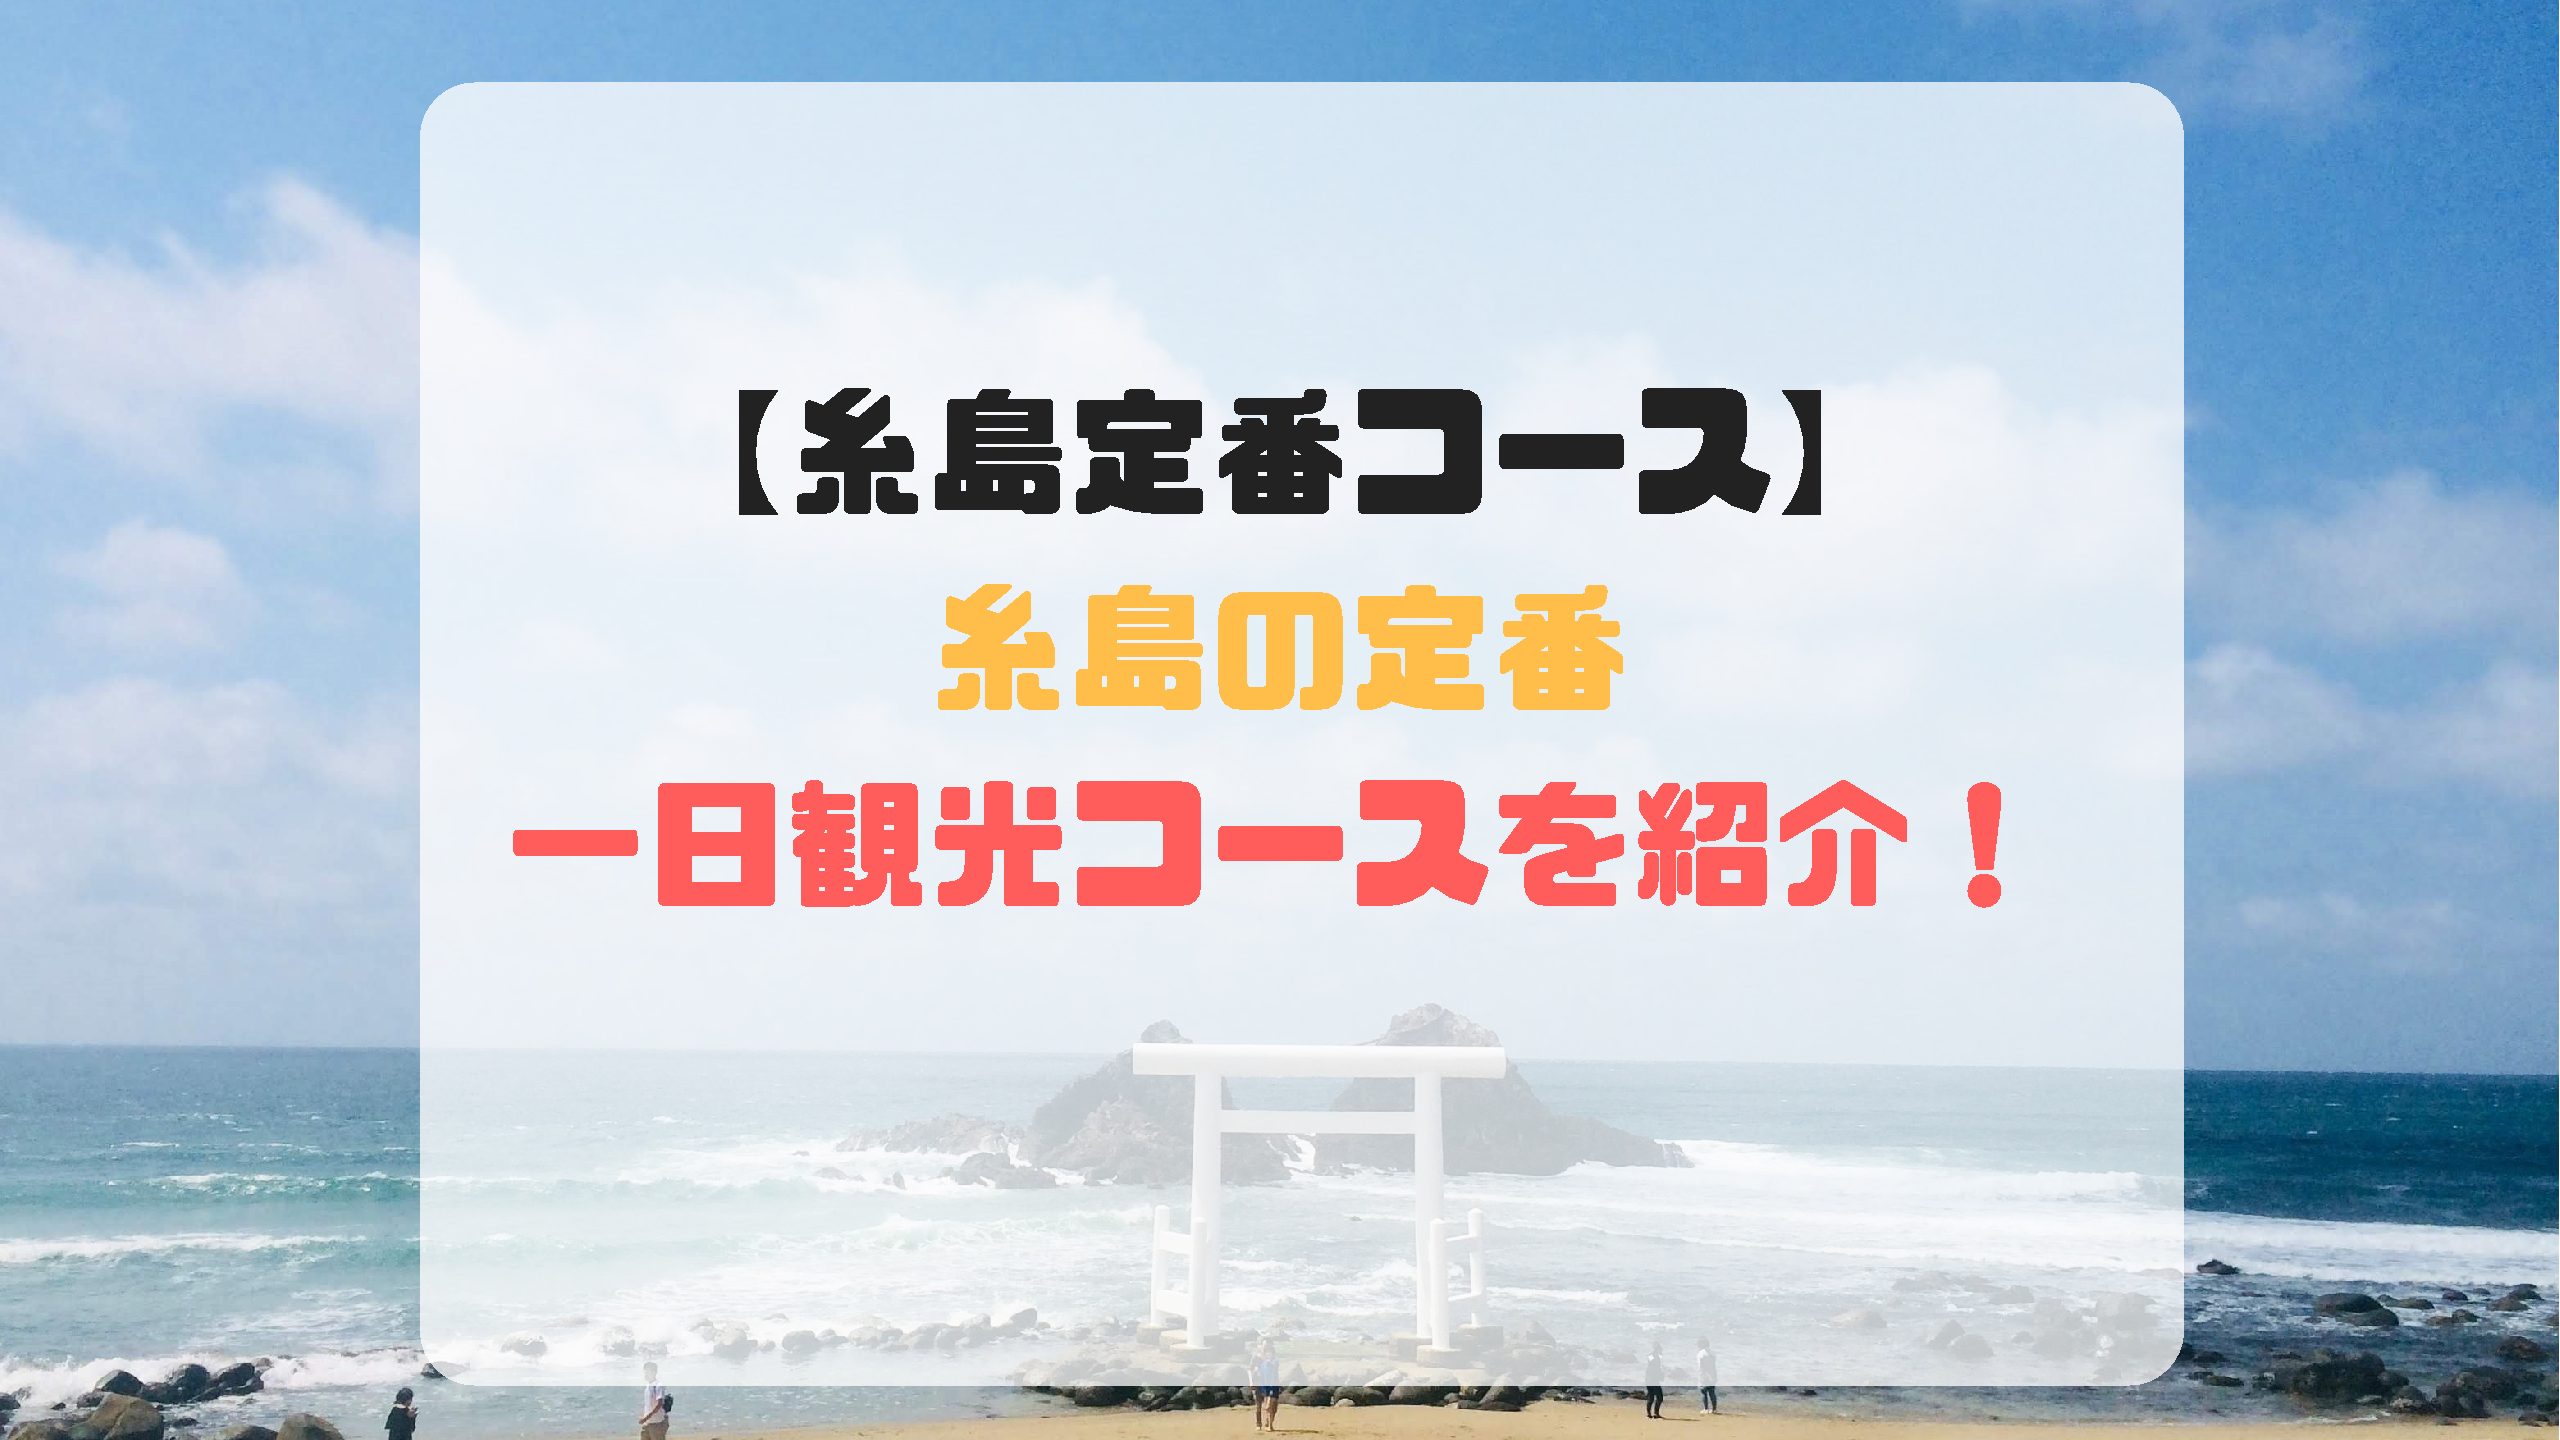 糸島定番コース 糸島の日帰り定番観光コースを紹介 けどログ